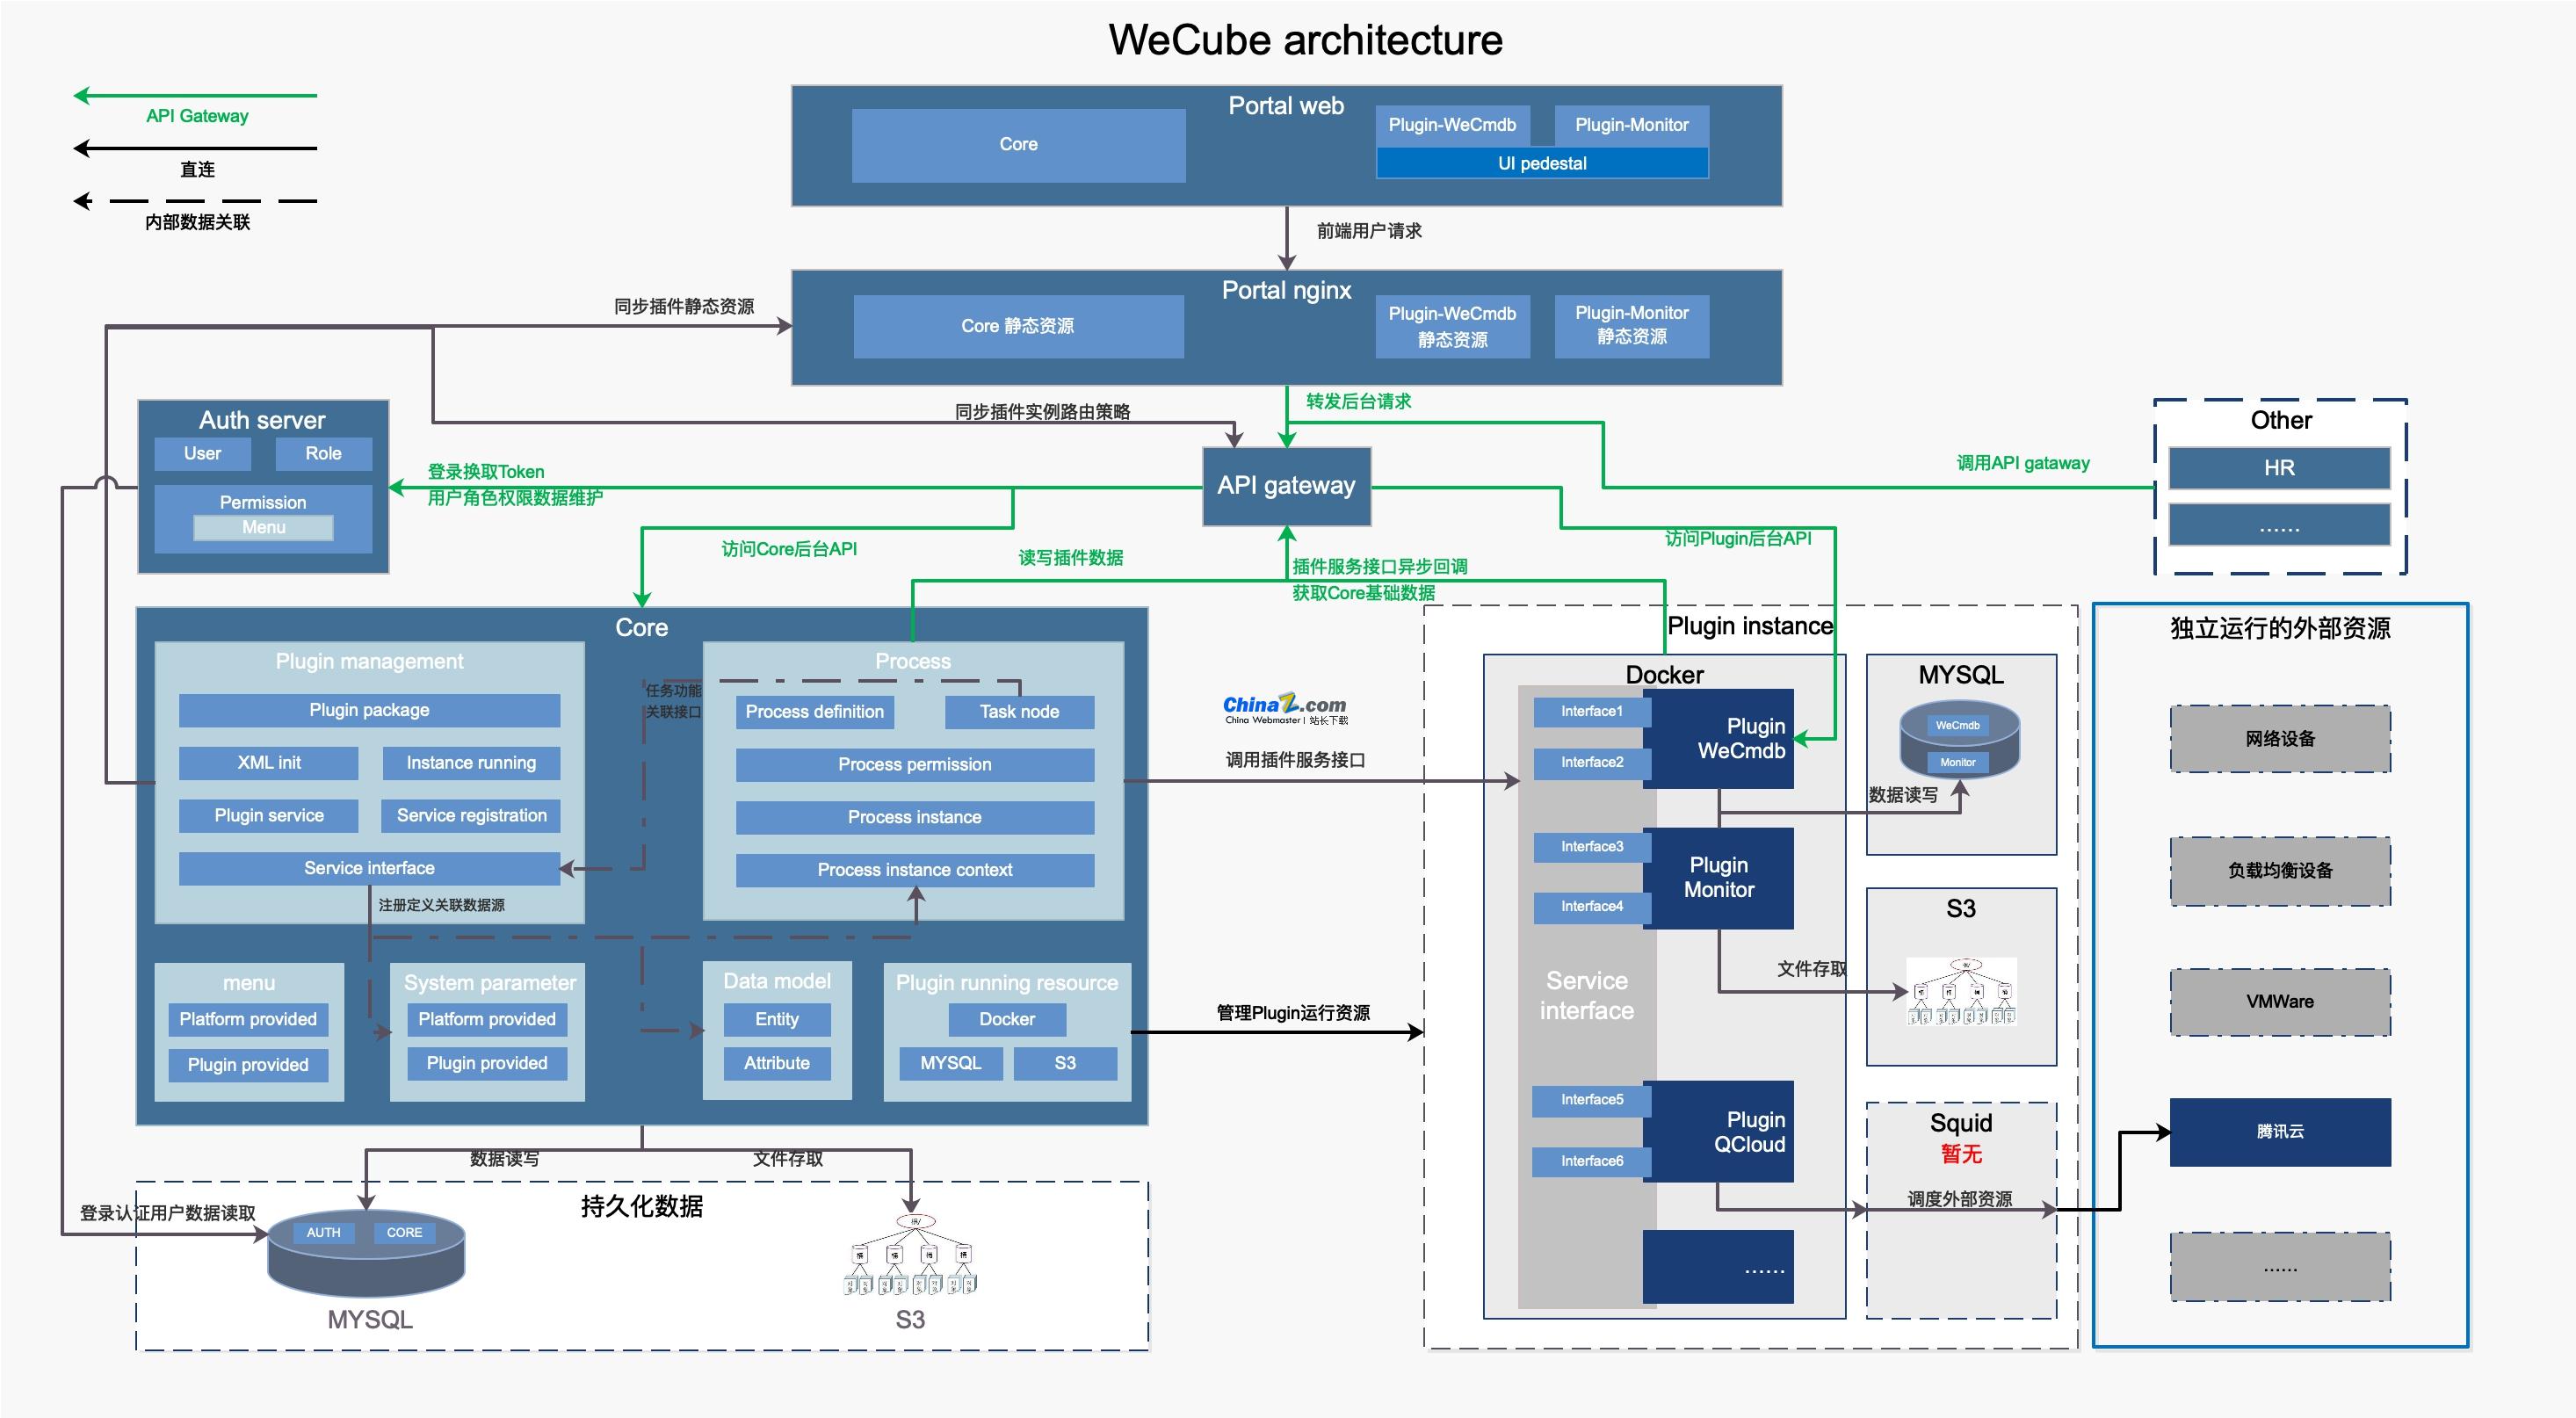 wecube一站式 IT 架构管理和运维管理工具